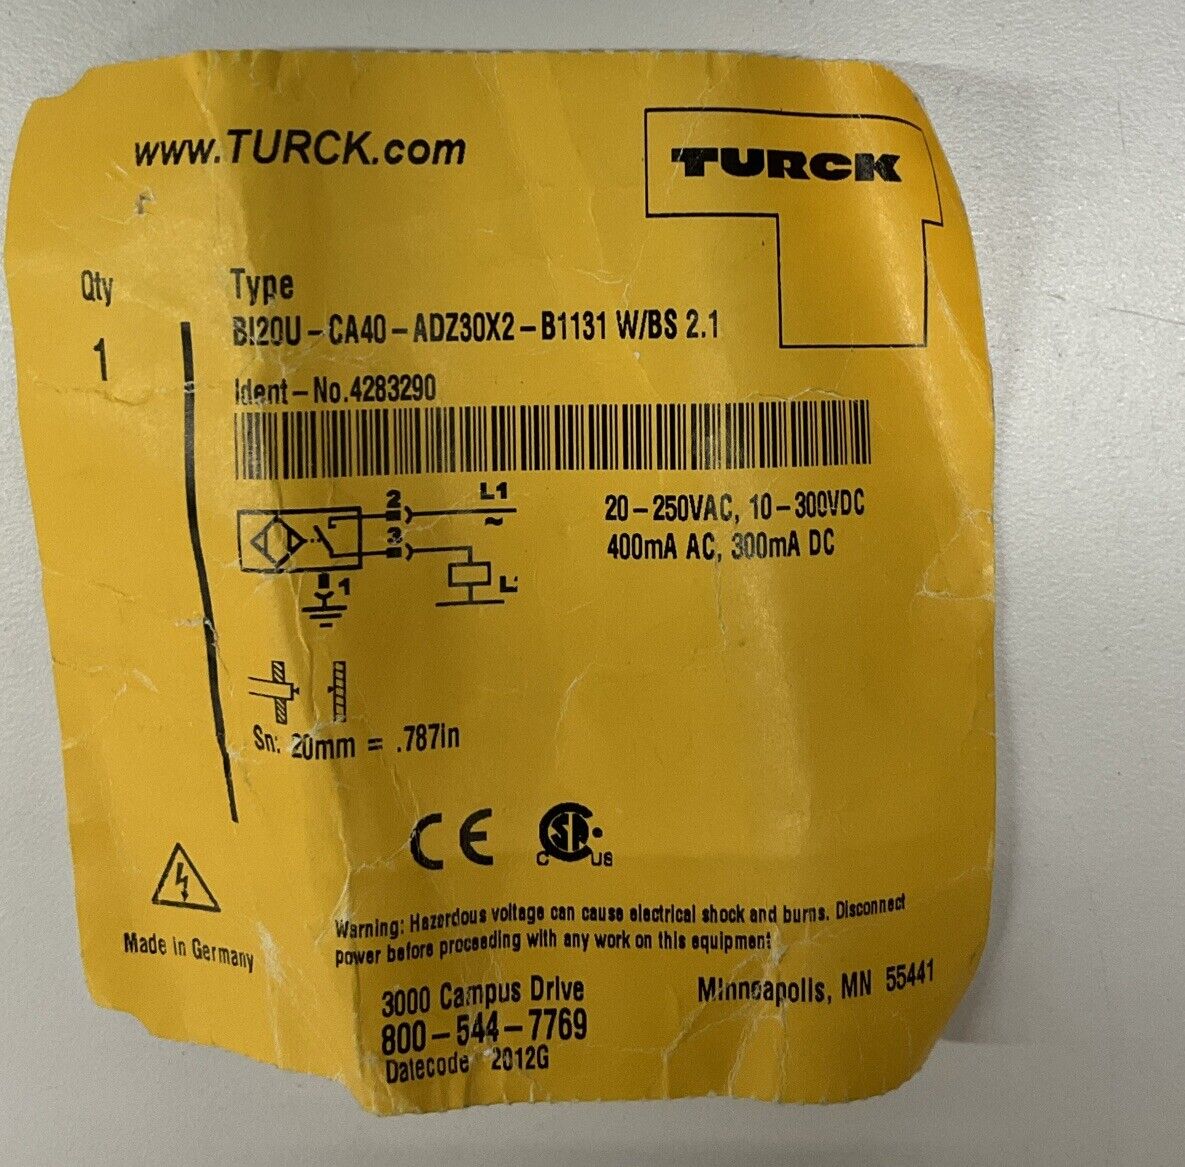 Turck Bi20U-CA40-ADZ30X2-B1131 Proximity Sensor SN:20mm (RE250) - 0